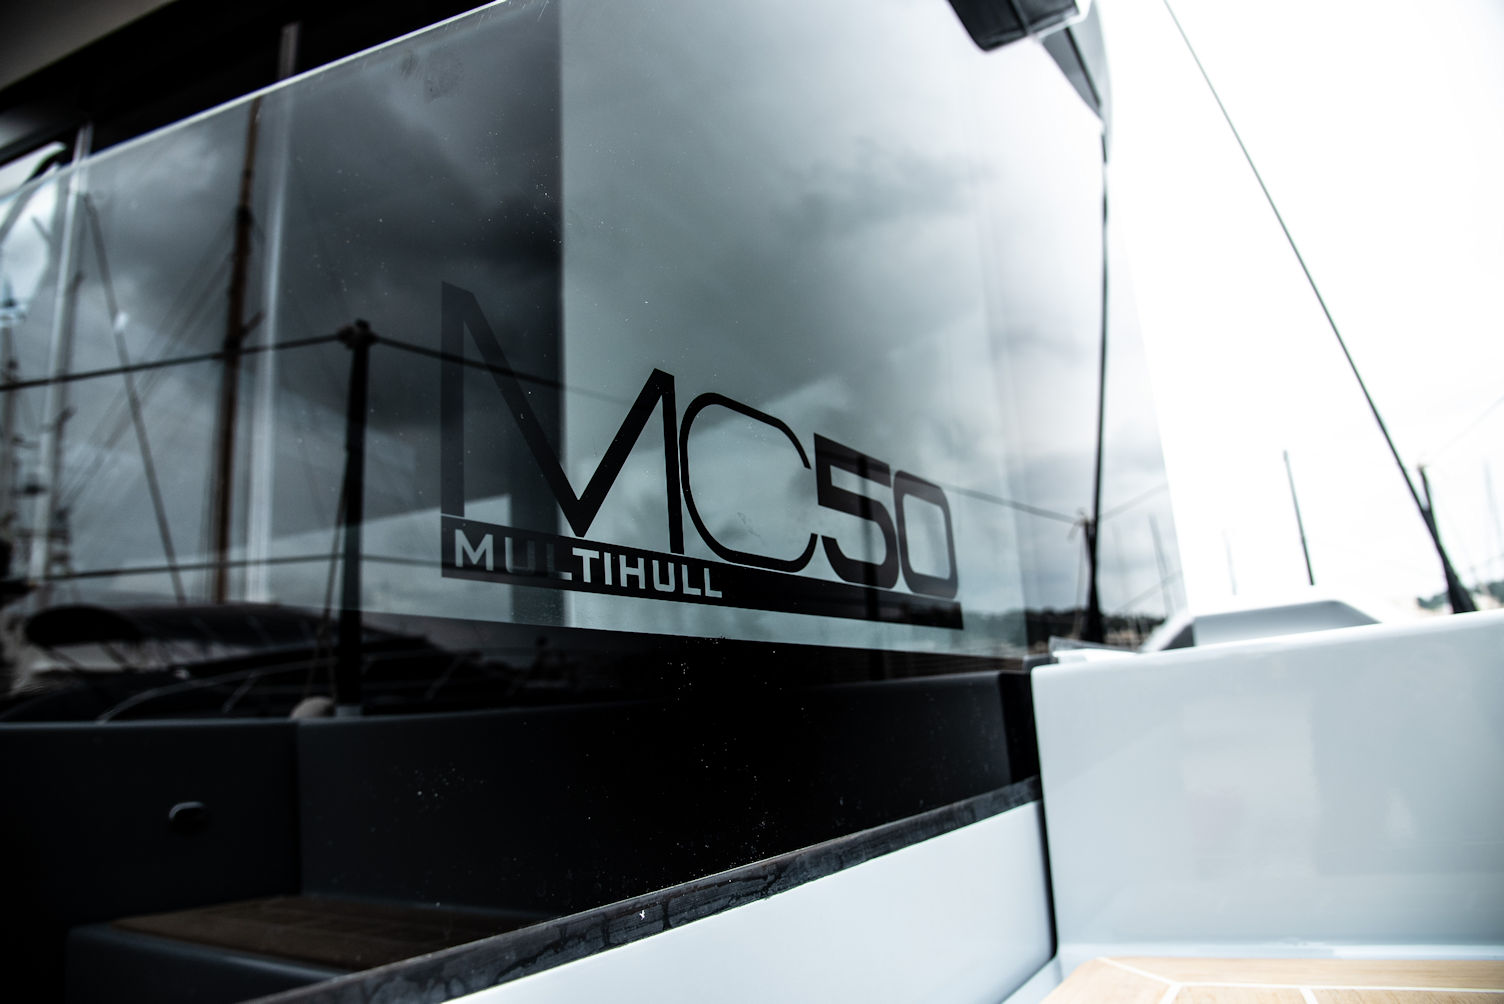 McConaghy MC50 multihull